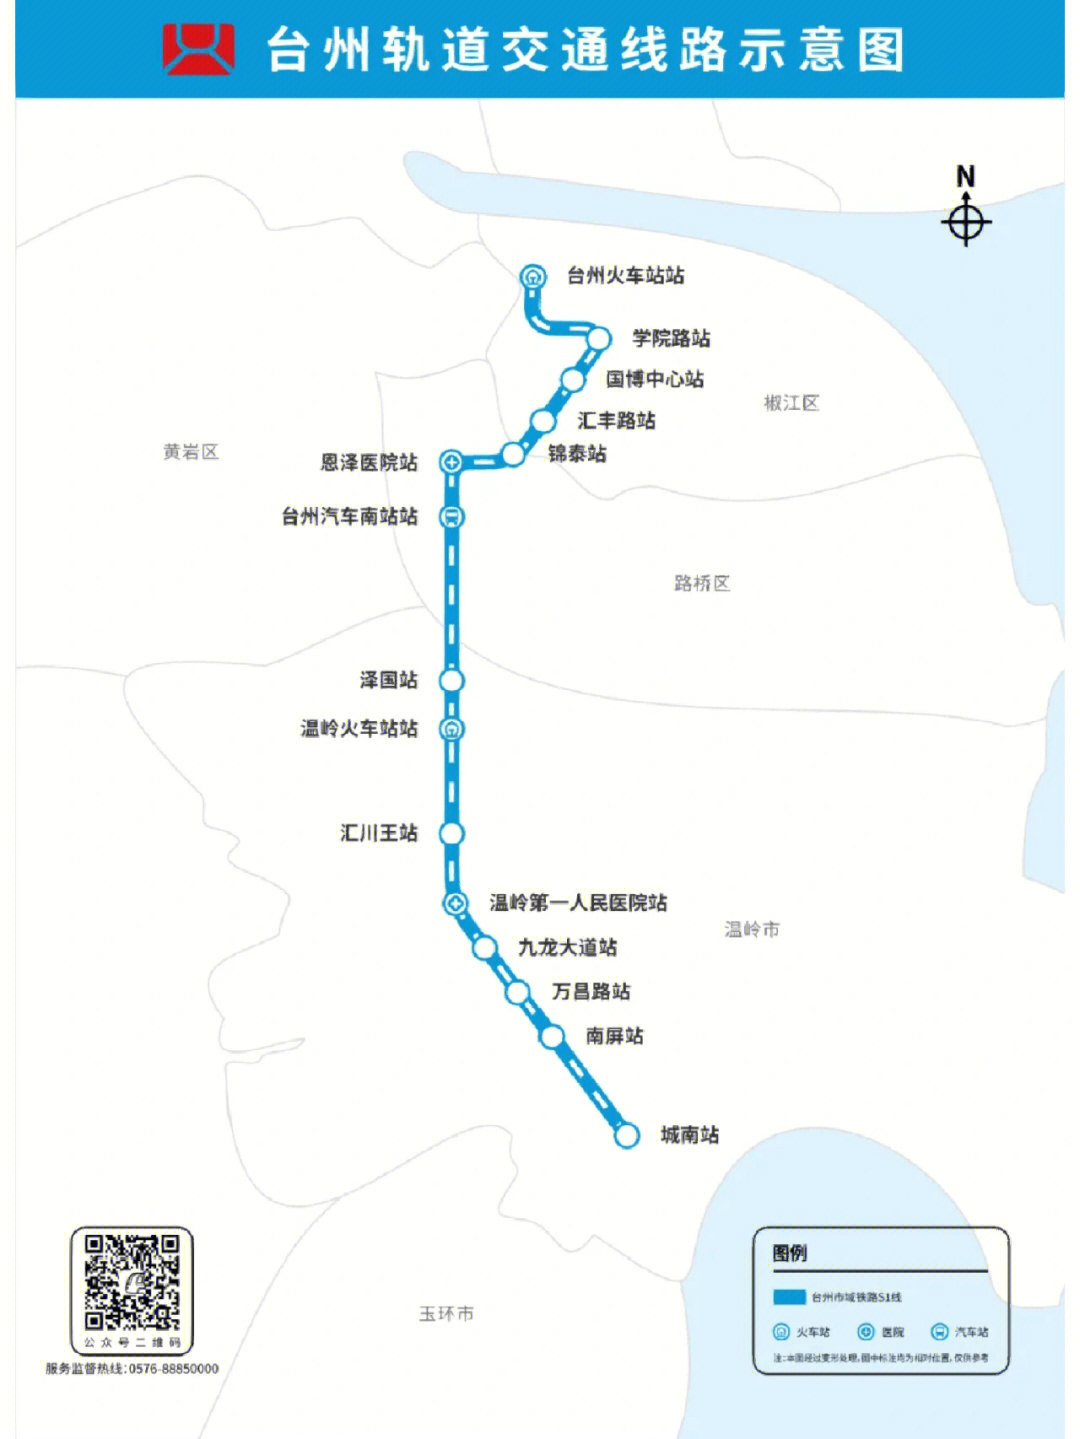 台州市域铁路s1线起步价2元全程11元